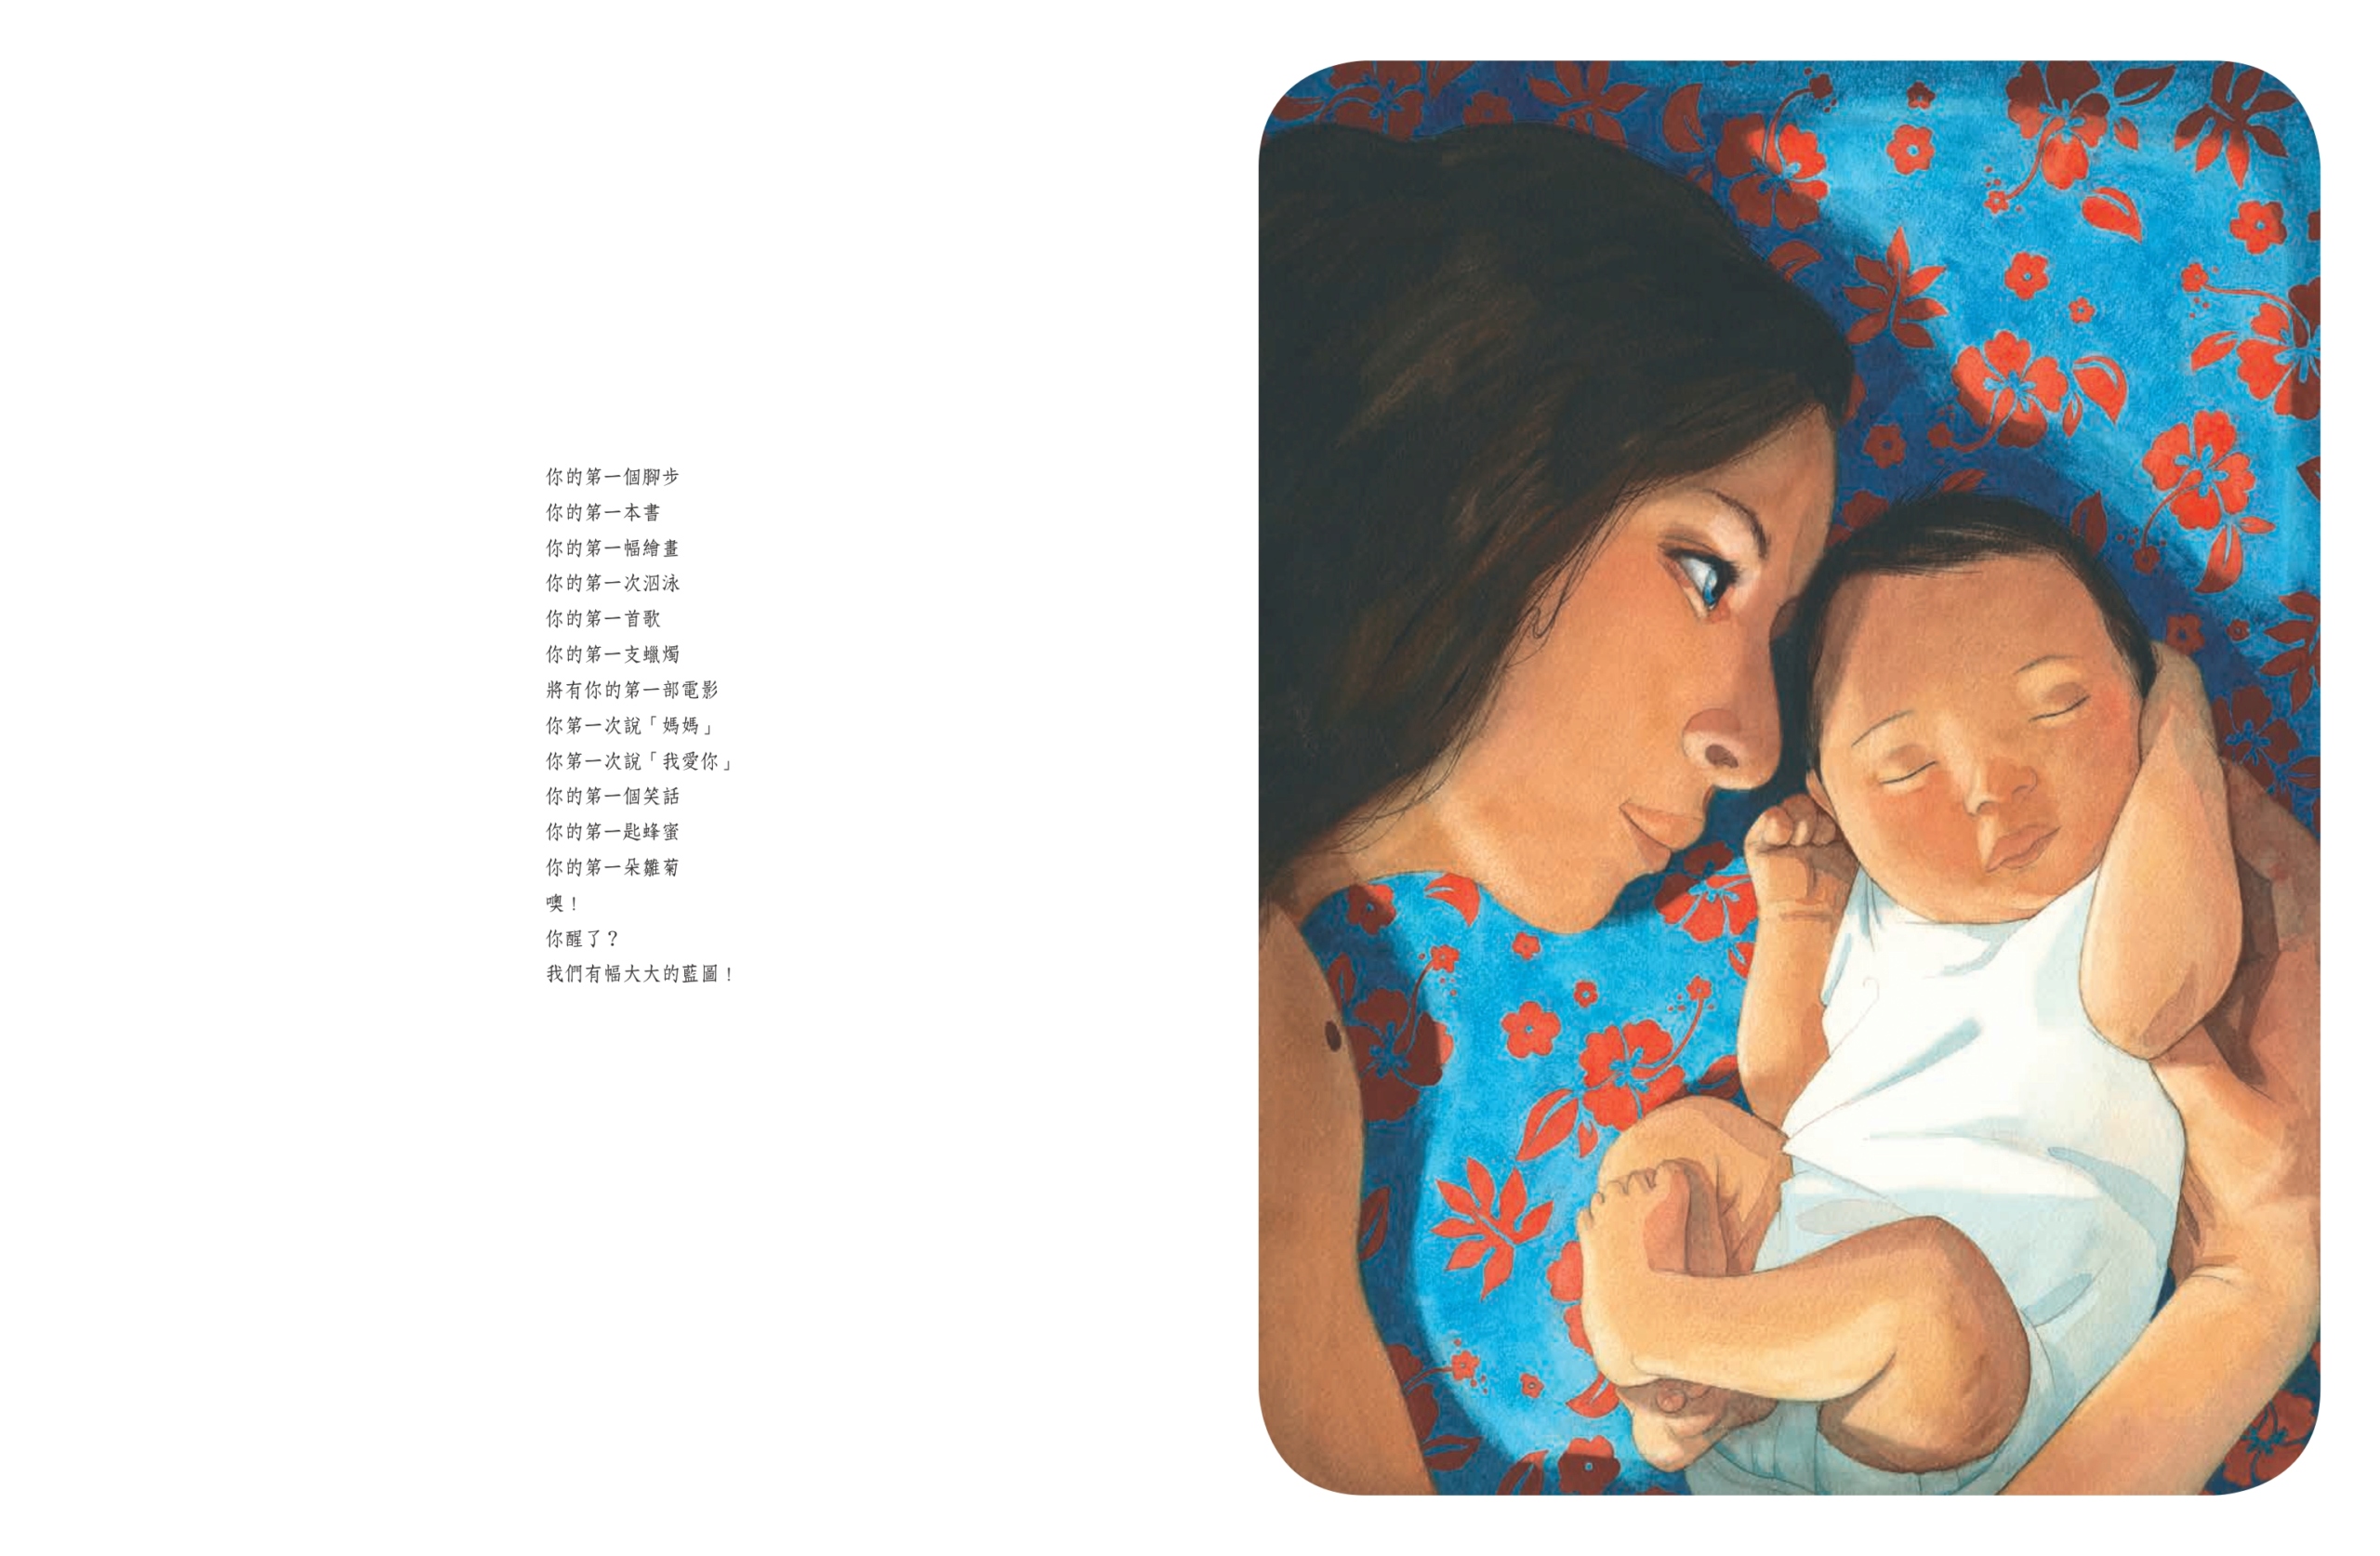 尖端 - 母親節暖心首選繪本《母親》 全球數十億人口中不同國度、不同生命階段的女性 都具有的共同身分「媽媽」 Cuioae14